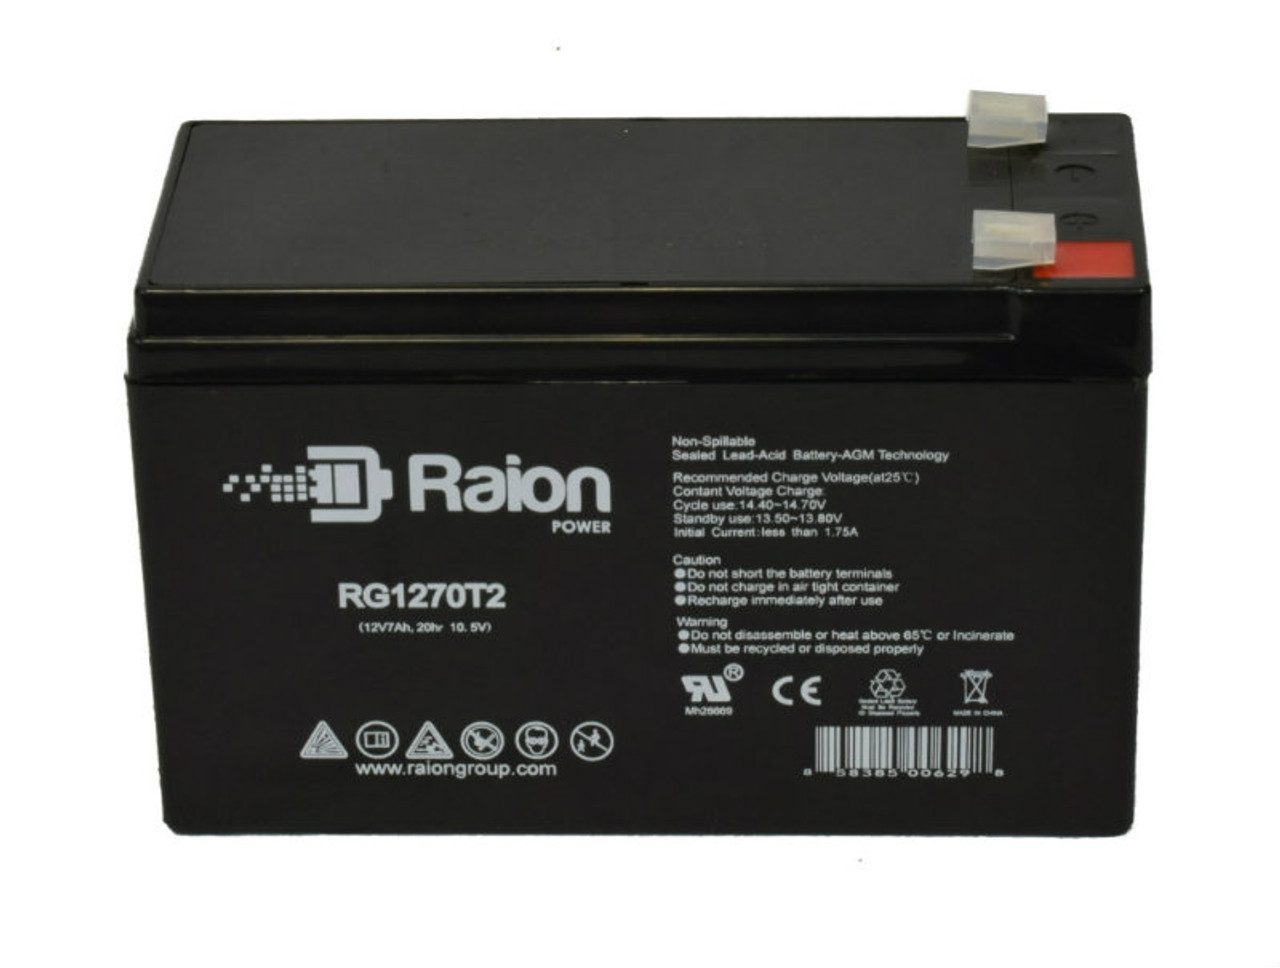 Raion Power RG1270T1 12V 7Ah Lead Acid Battery for Harmar RP350 Alpine II Standard Stairlift